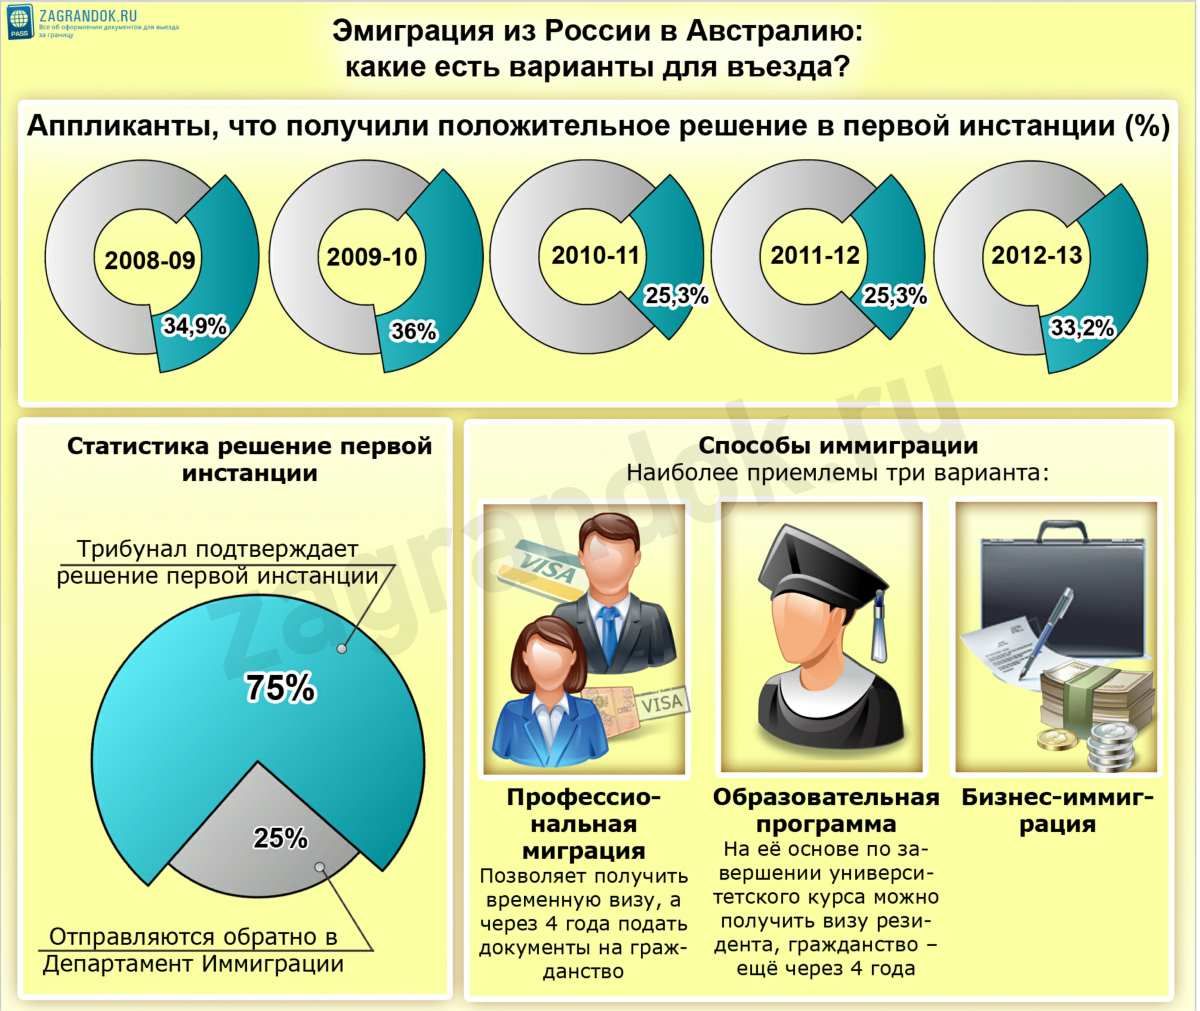 Иммиграция в болгарию в 2020: условия, программы, помощь